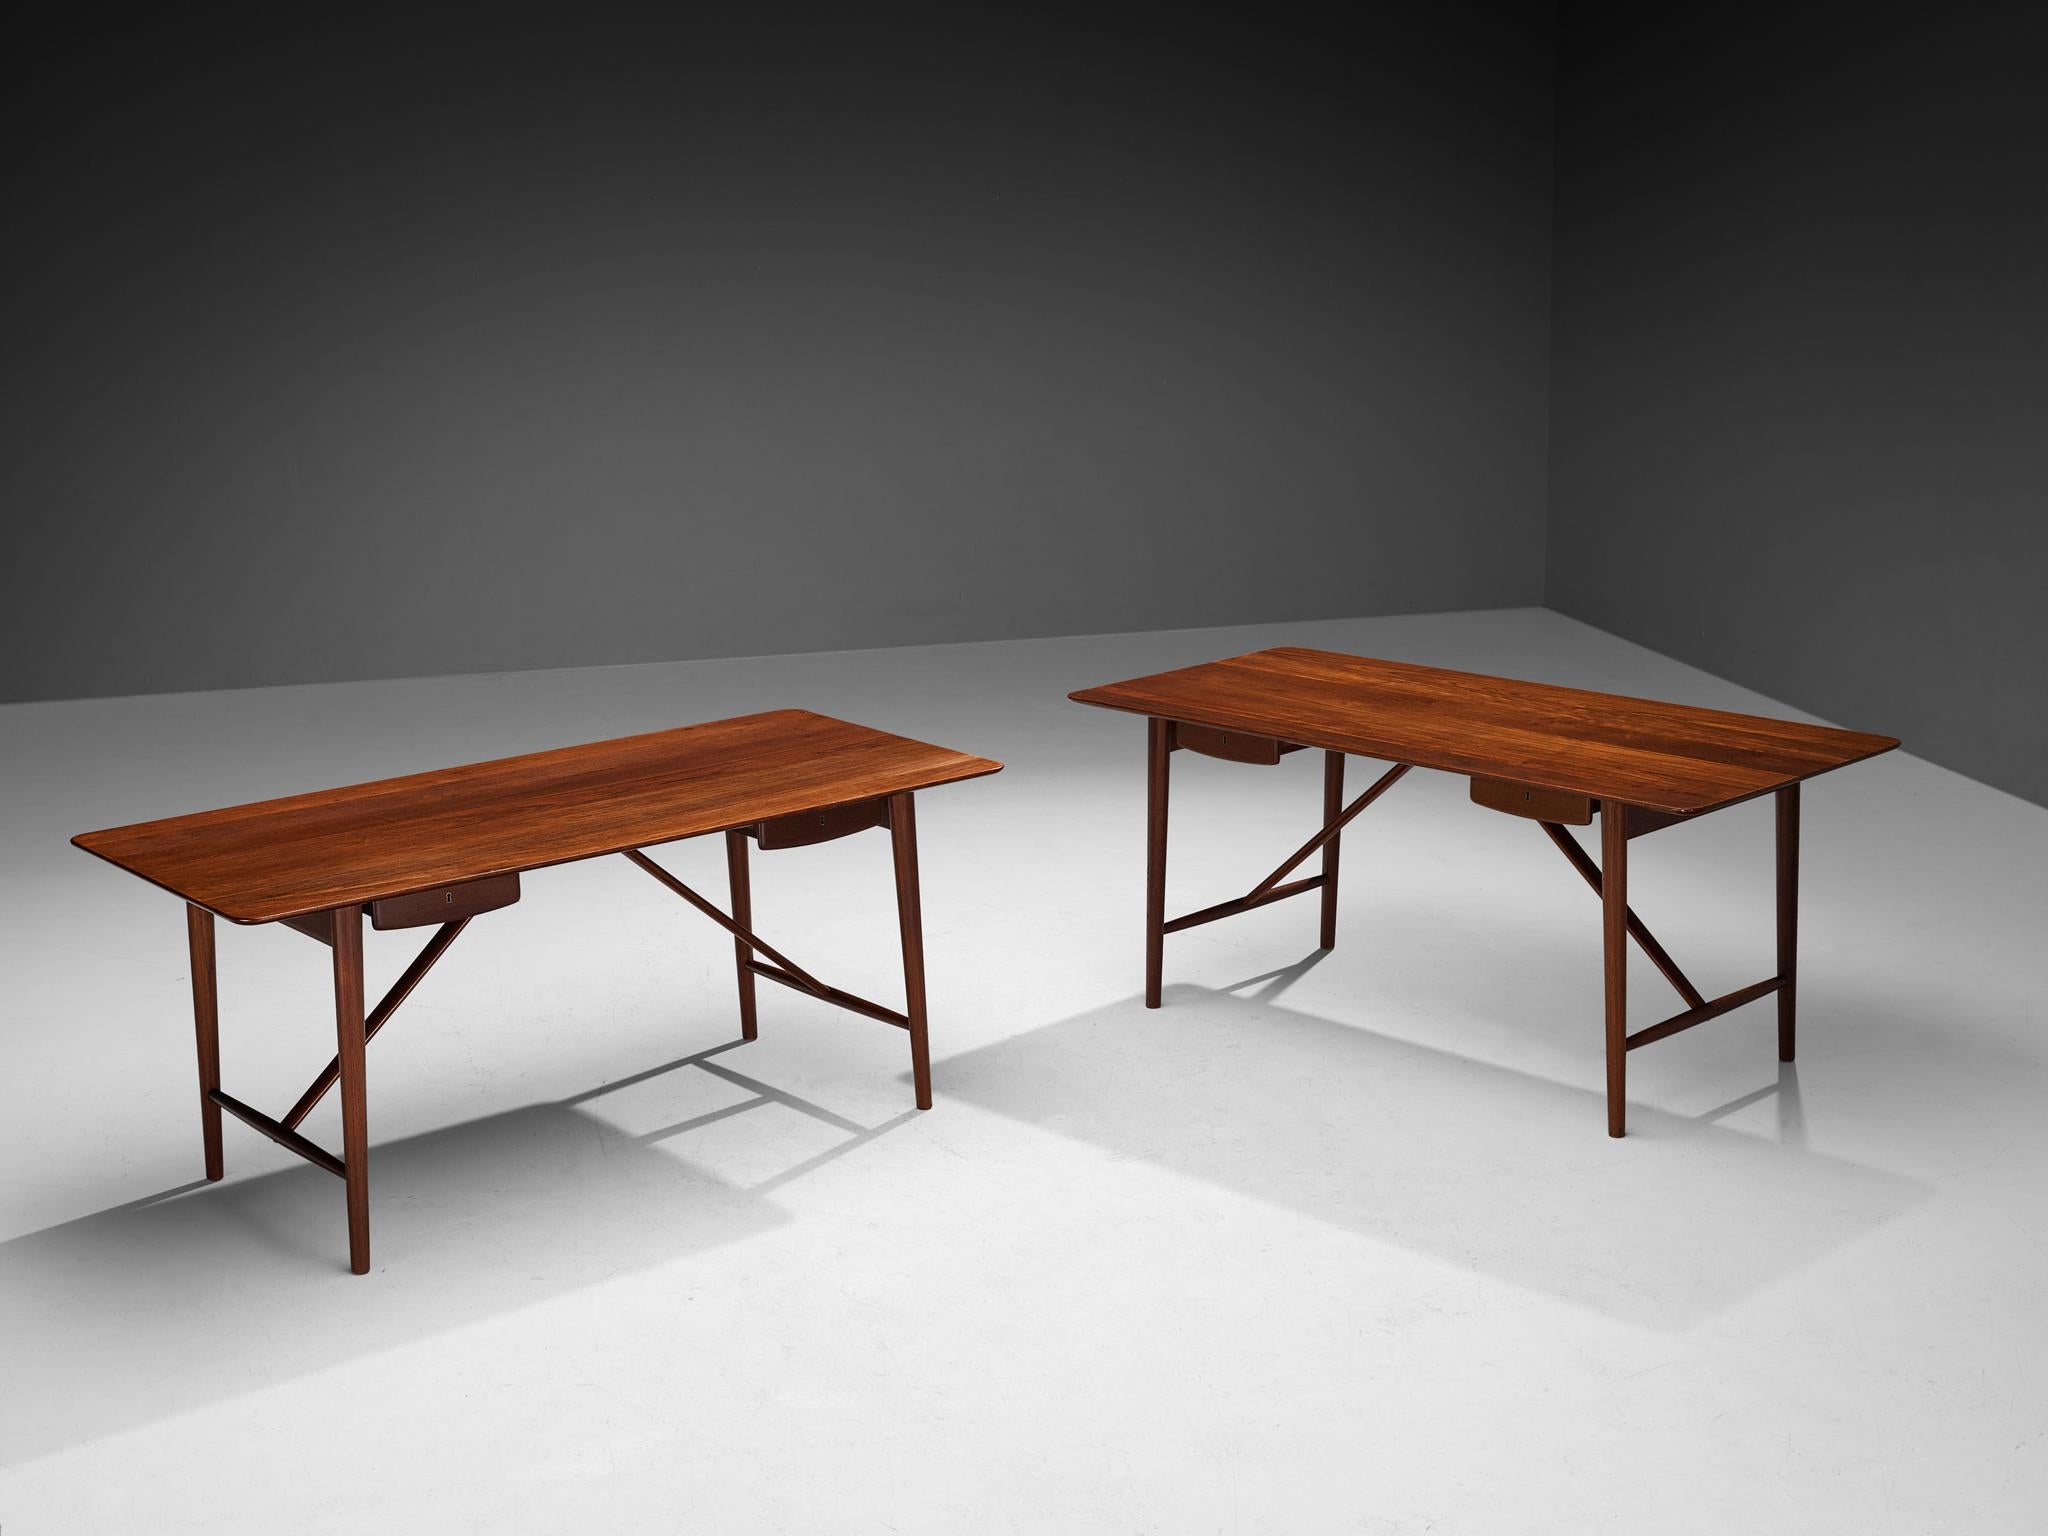 Peter Hvidt and Orla Mølgaard-Nielsen, desks model 310, solid teak, Denmark, 1950s.

Stunning desk designed by Peter Hvidt and Orla Mølgaard-Nielsen. It truly holds the quintessential essence of Danish design with its understated and clear